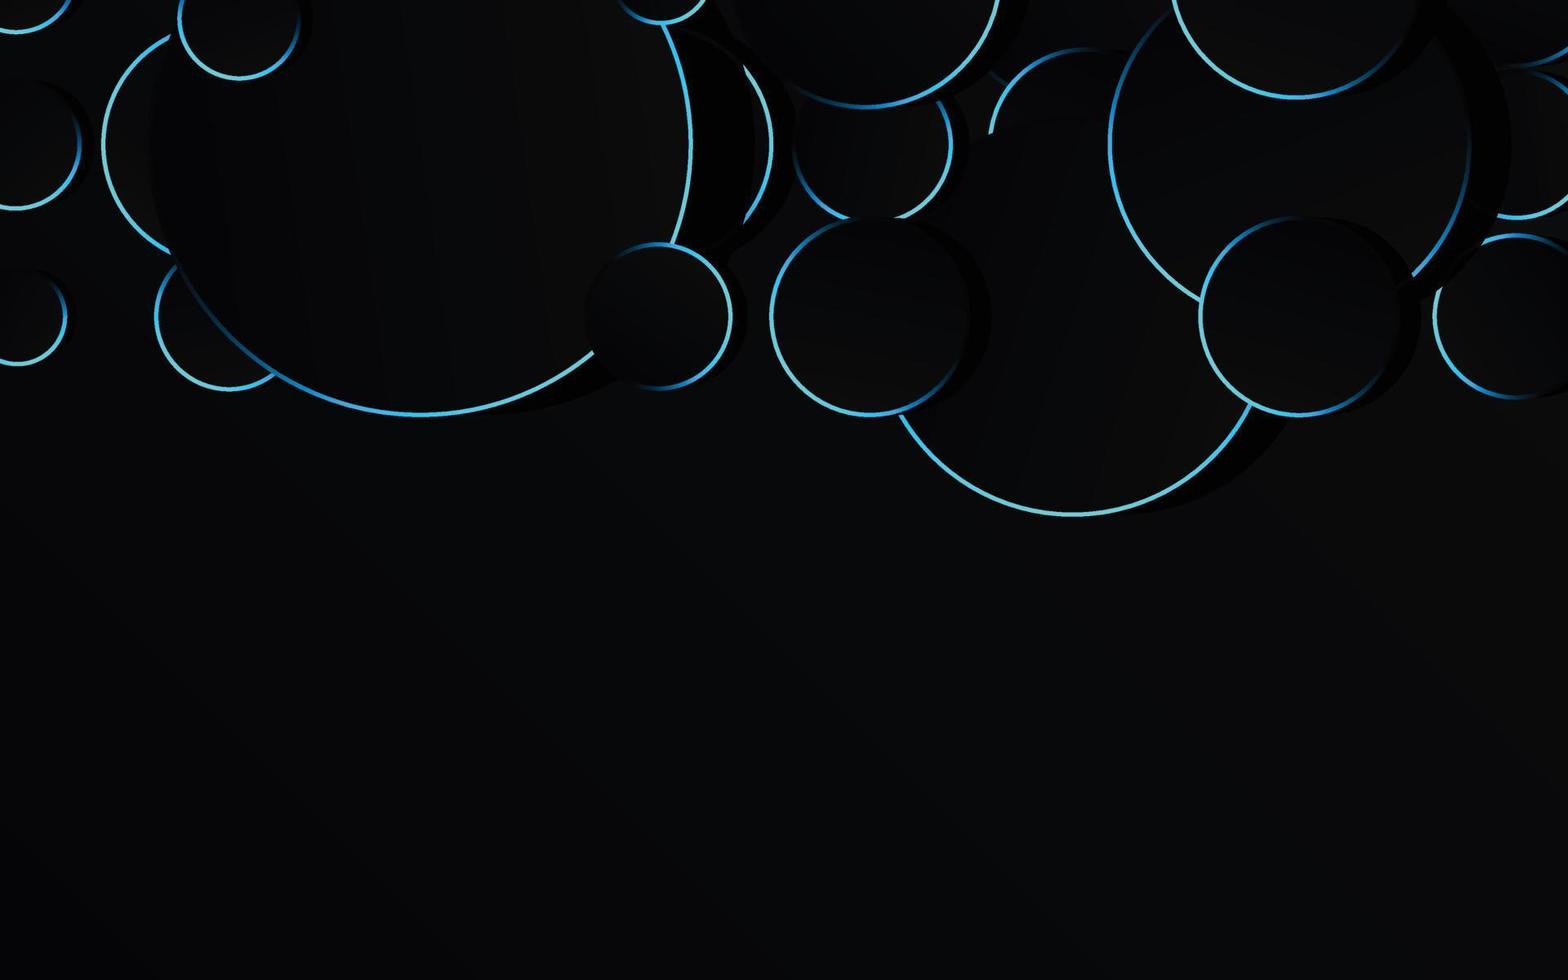 abstrakter blauer Kreis auf schwarzer Hintergrundtechnologie vektor